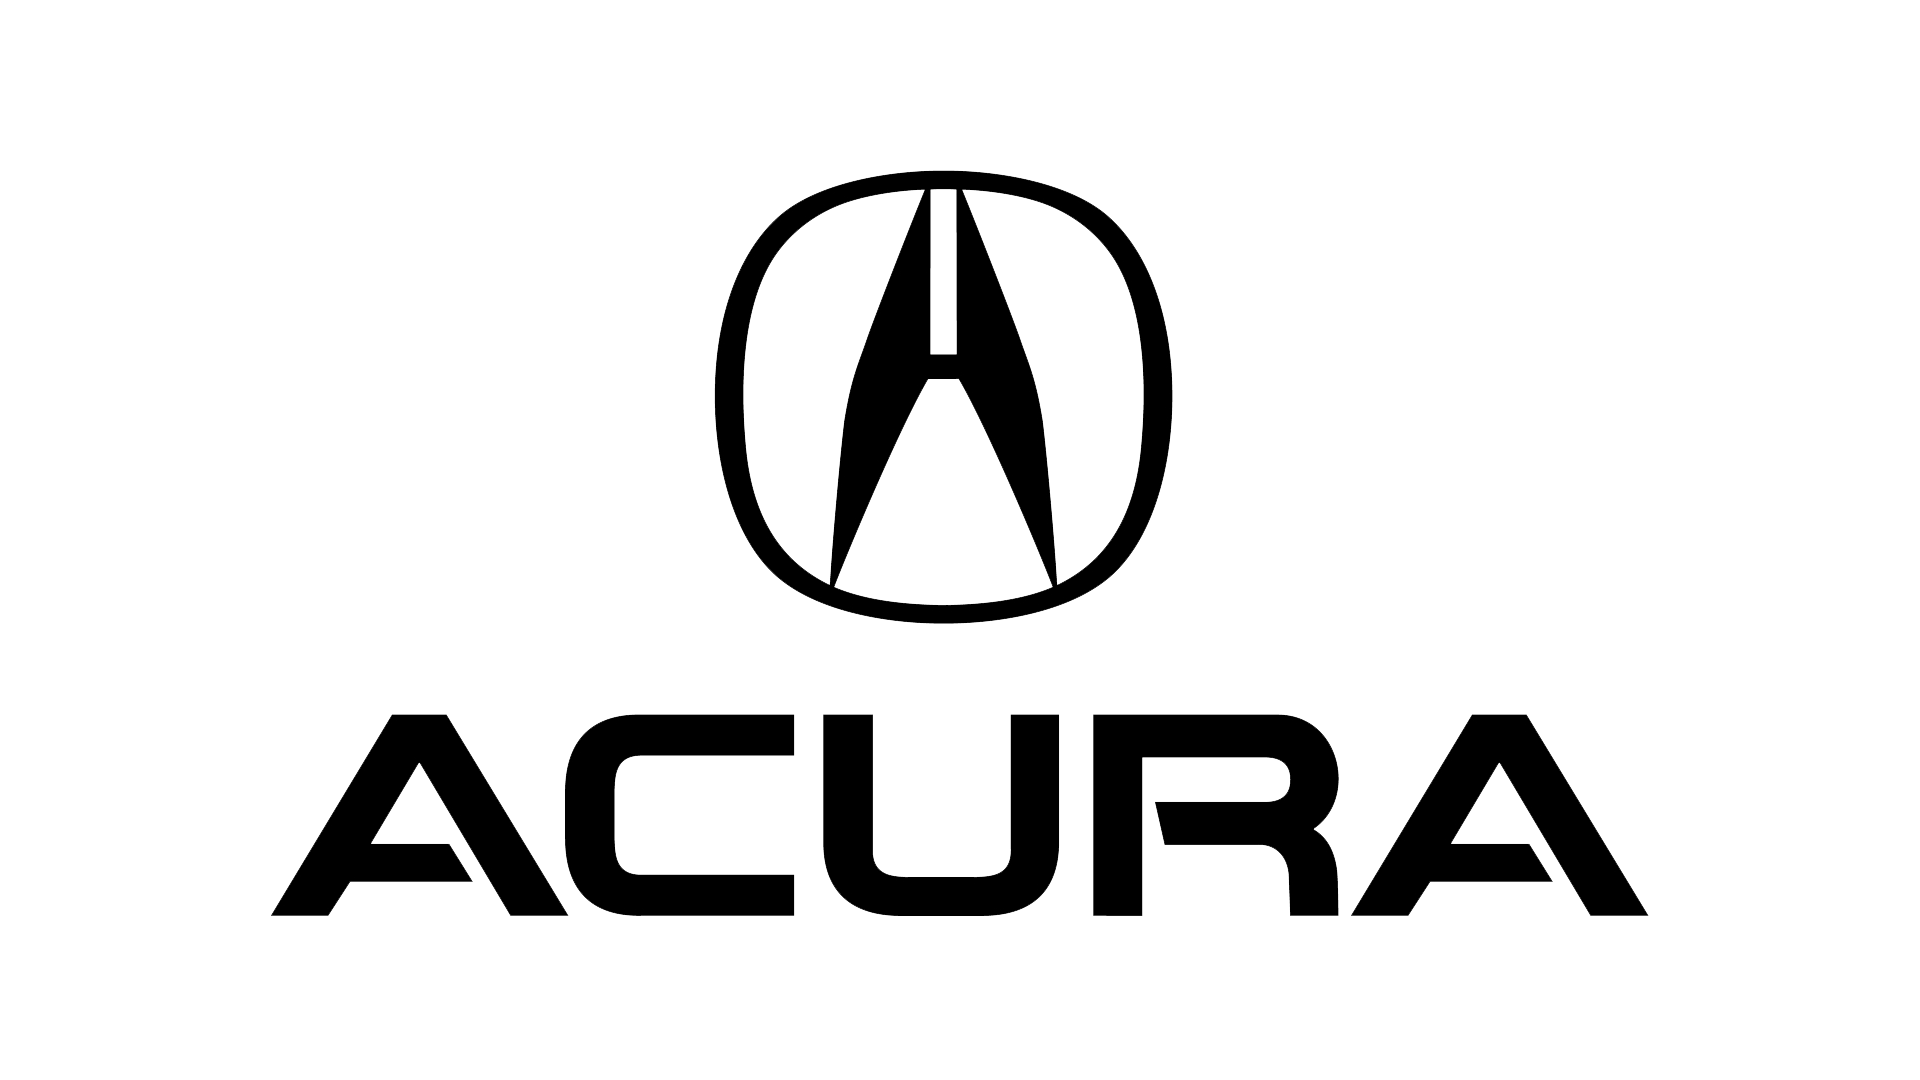 Acura-symbol-1990-1920x1080.png